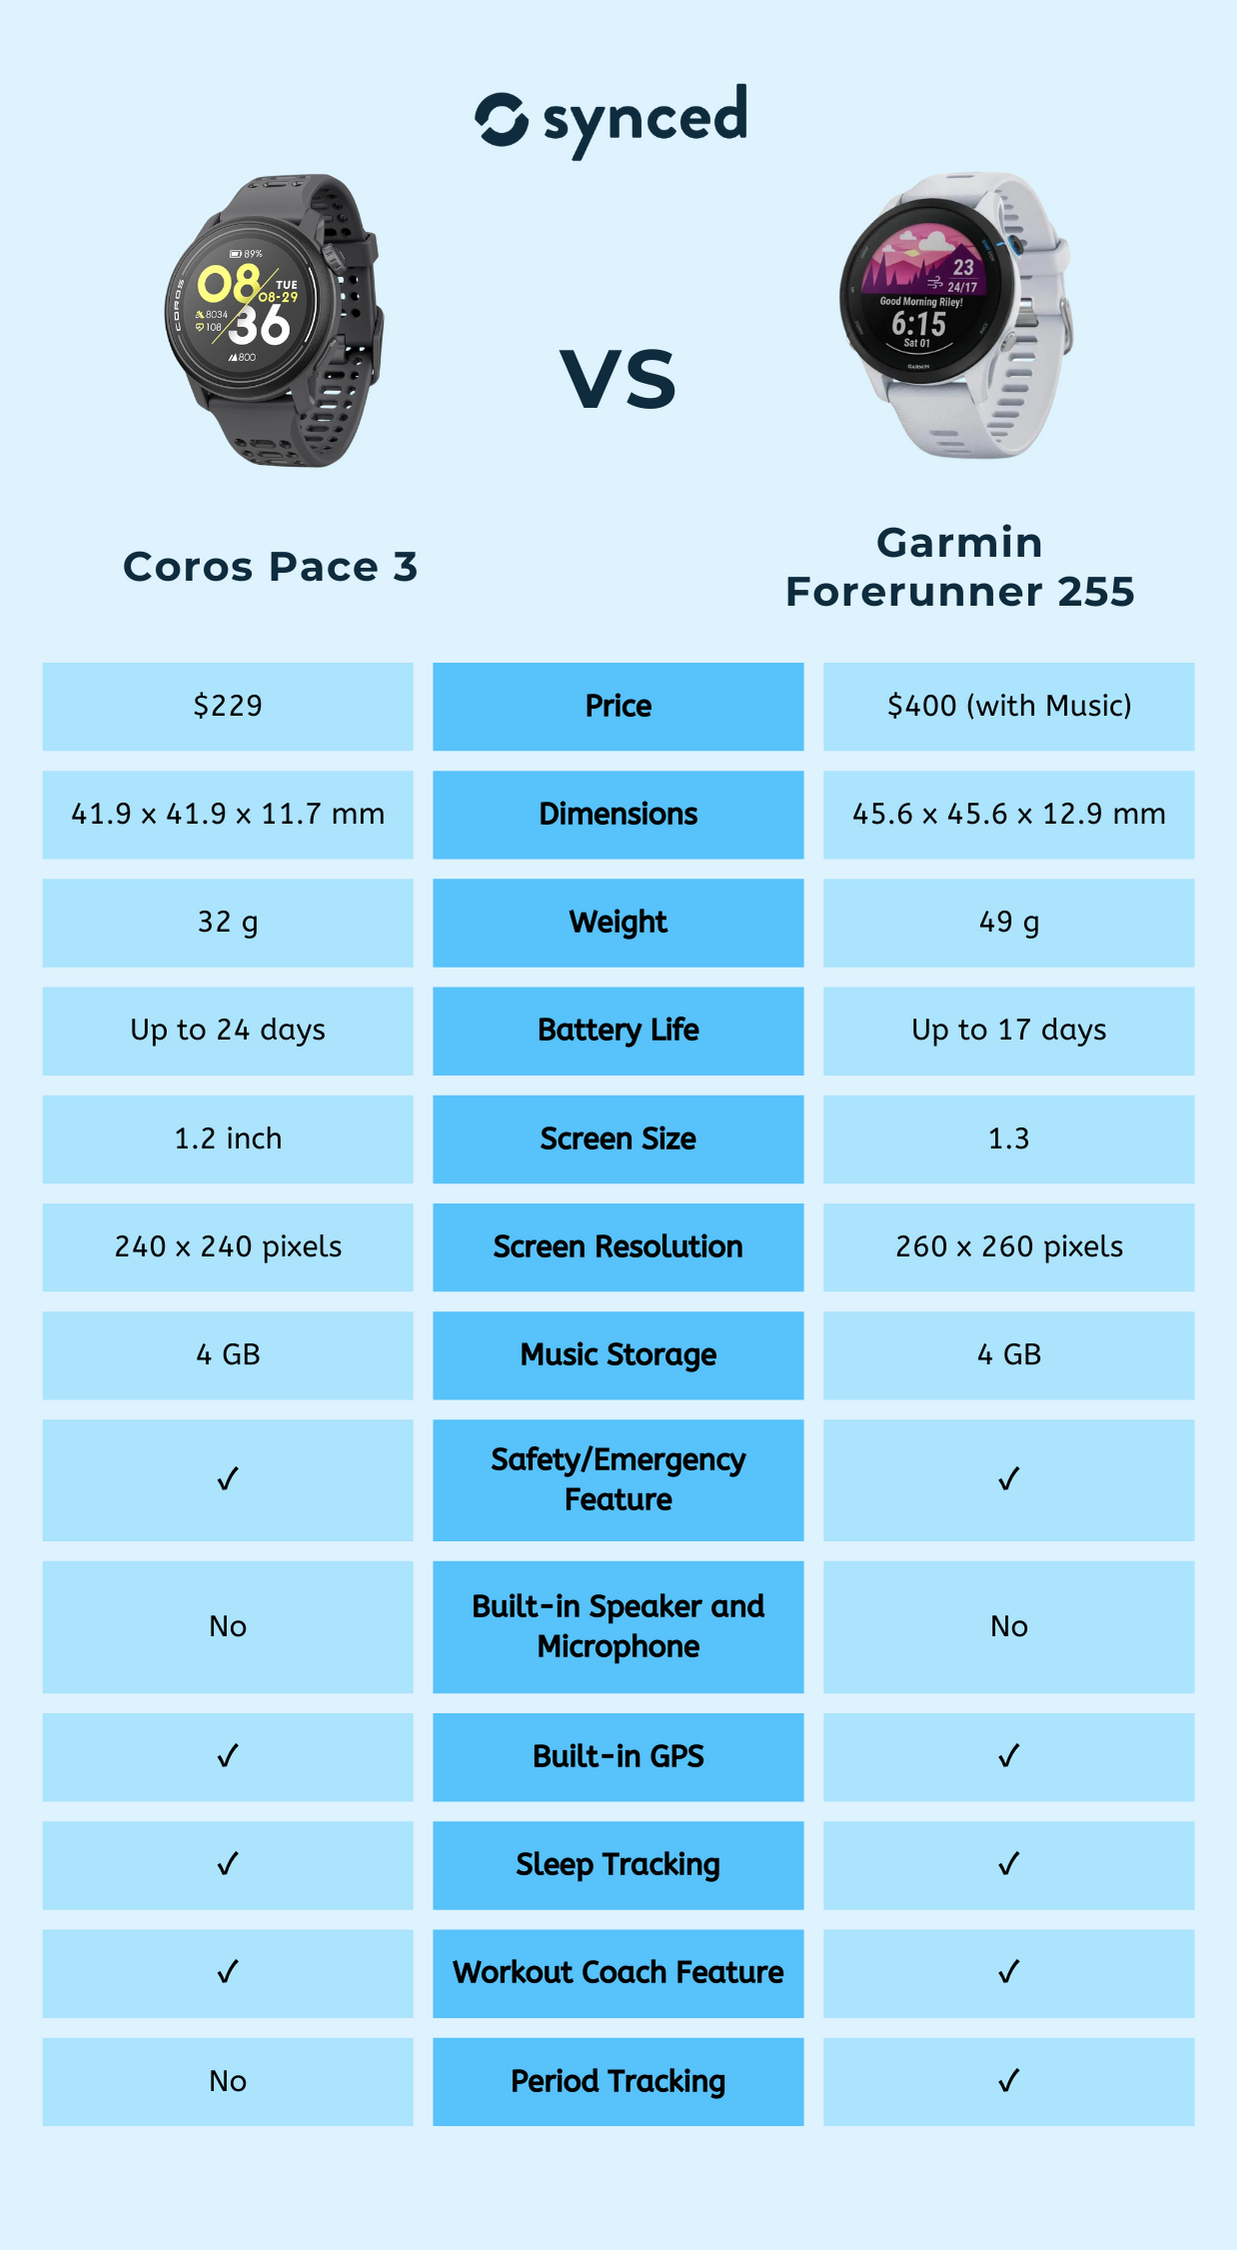 Coros Pace 3 vs Garmin Forerunner 255